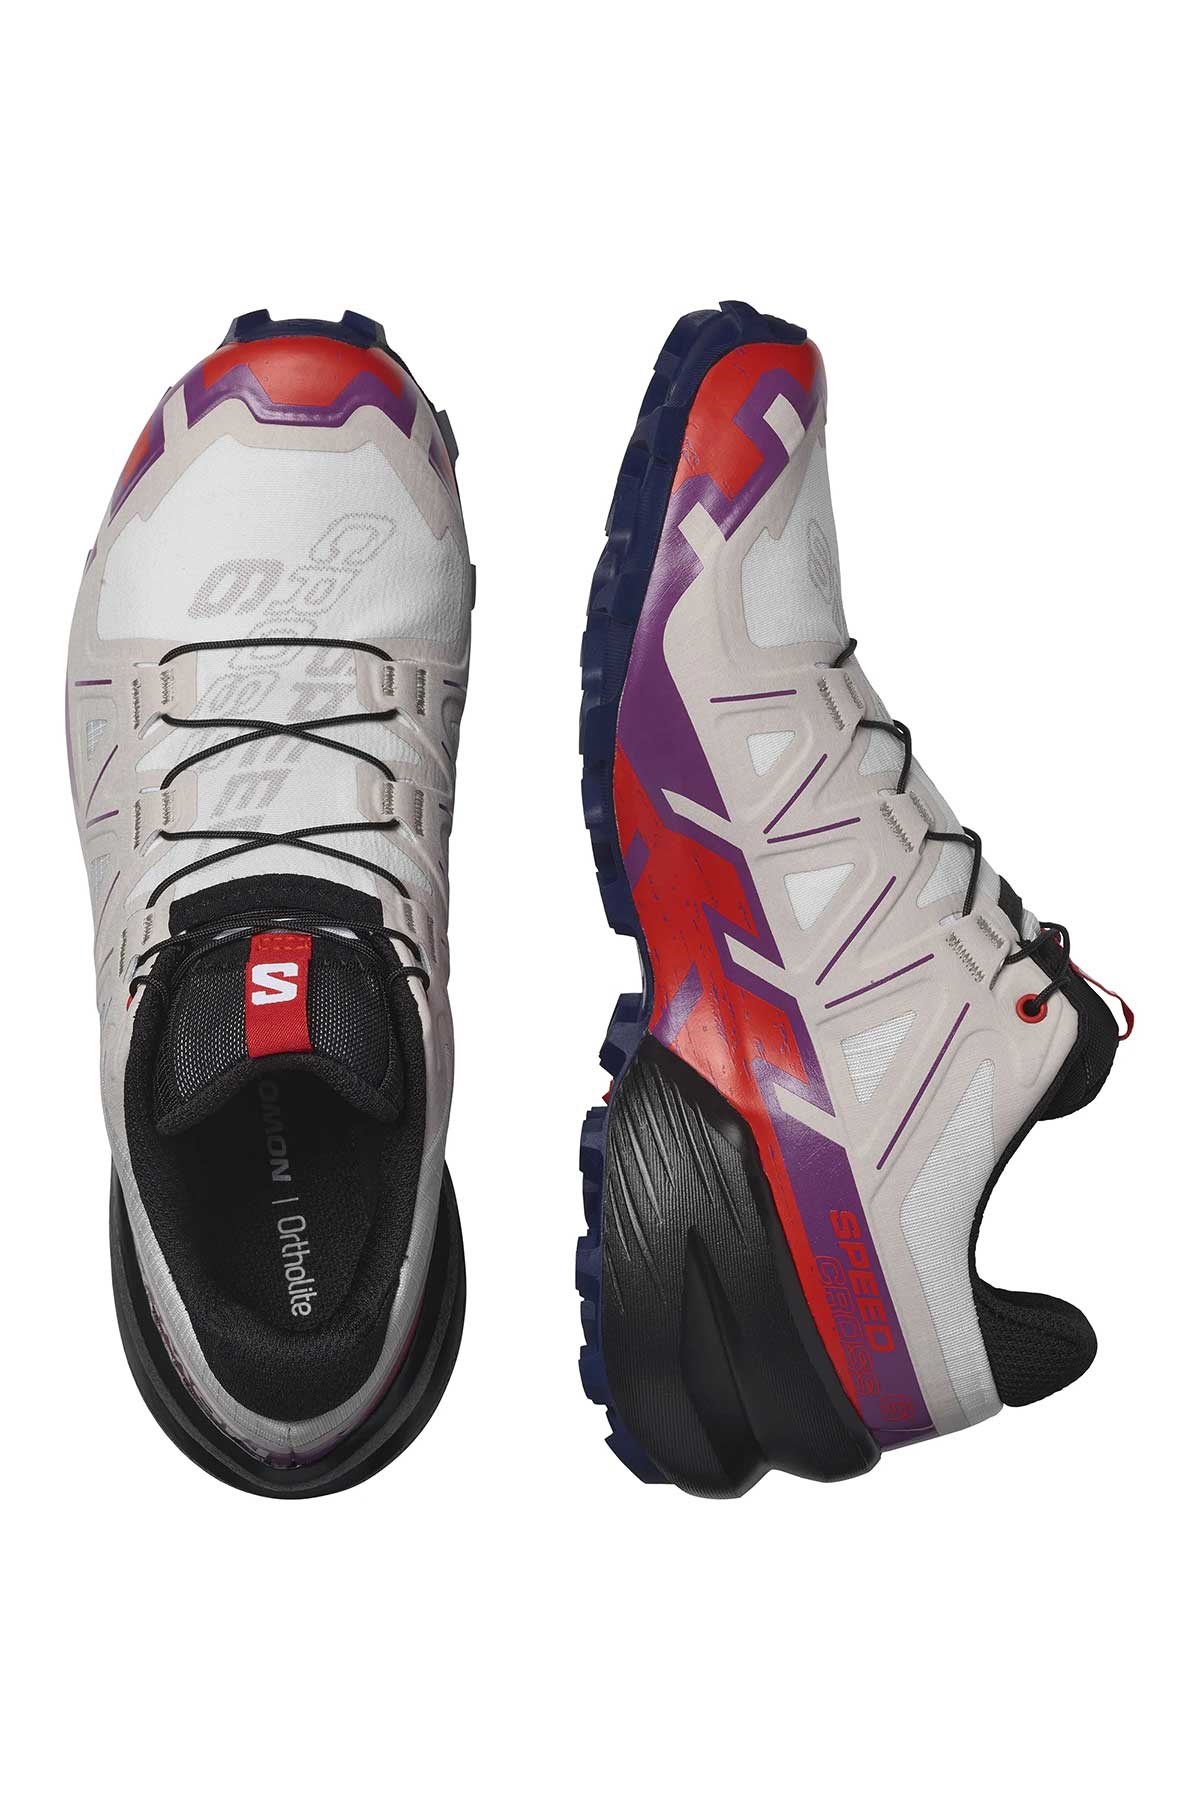 Salomon Speedcross 6 Kadın Beyaz Outdoor Ayakkabı (L41743200)